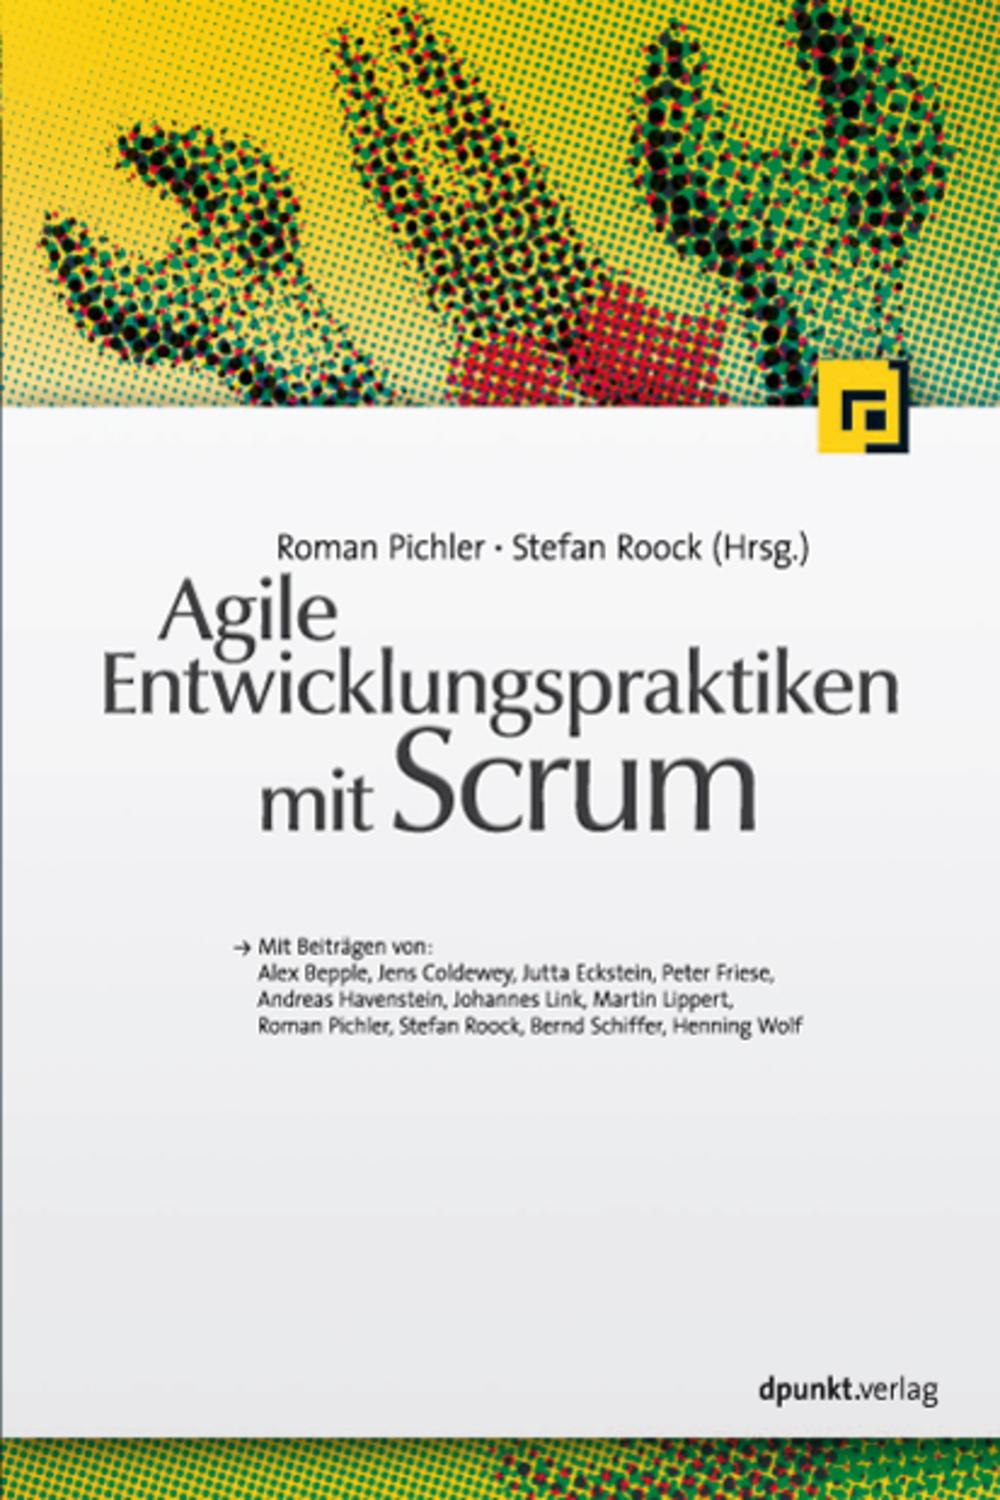 Agile Entwicklungspraktiken mit Scrum - Roman Pichler, Stefan Roock